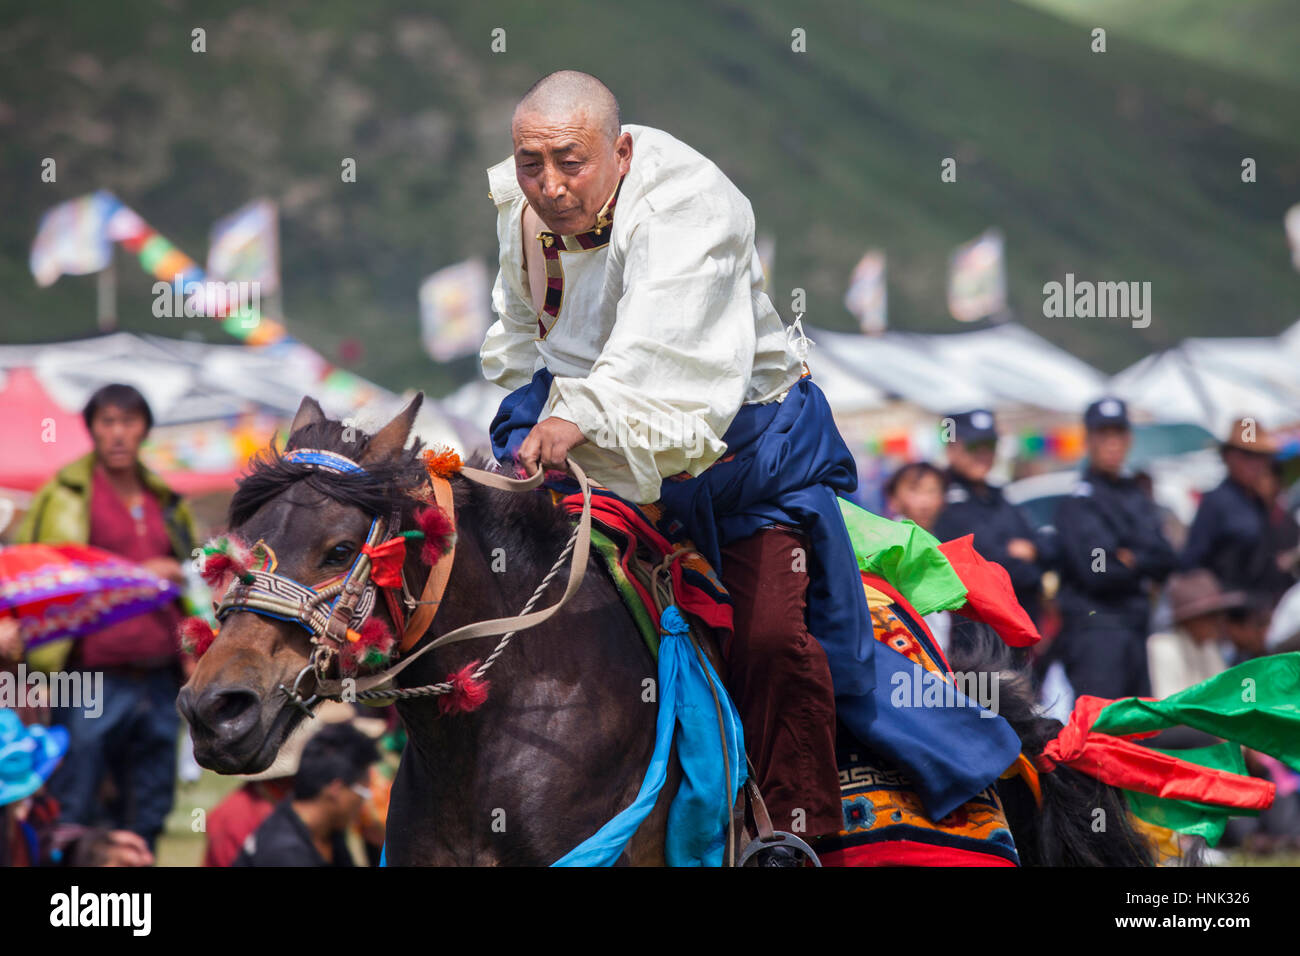 Khampa homme monter des chevaux au cours de la fête du cheval Manigango dans la région du Plateau tibétain dans le Sichuan, Chine. Banque D'Images